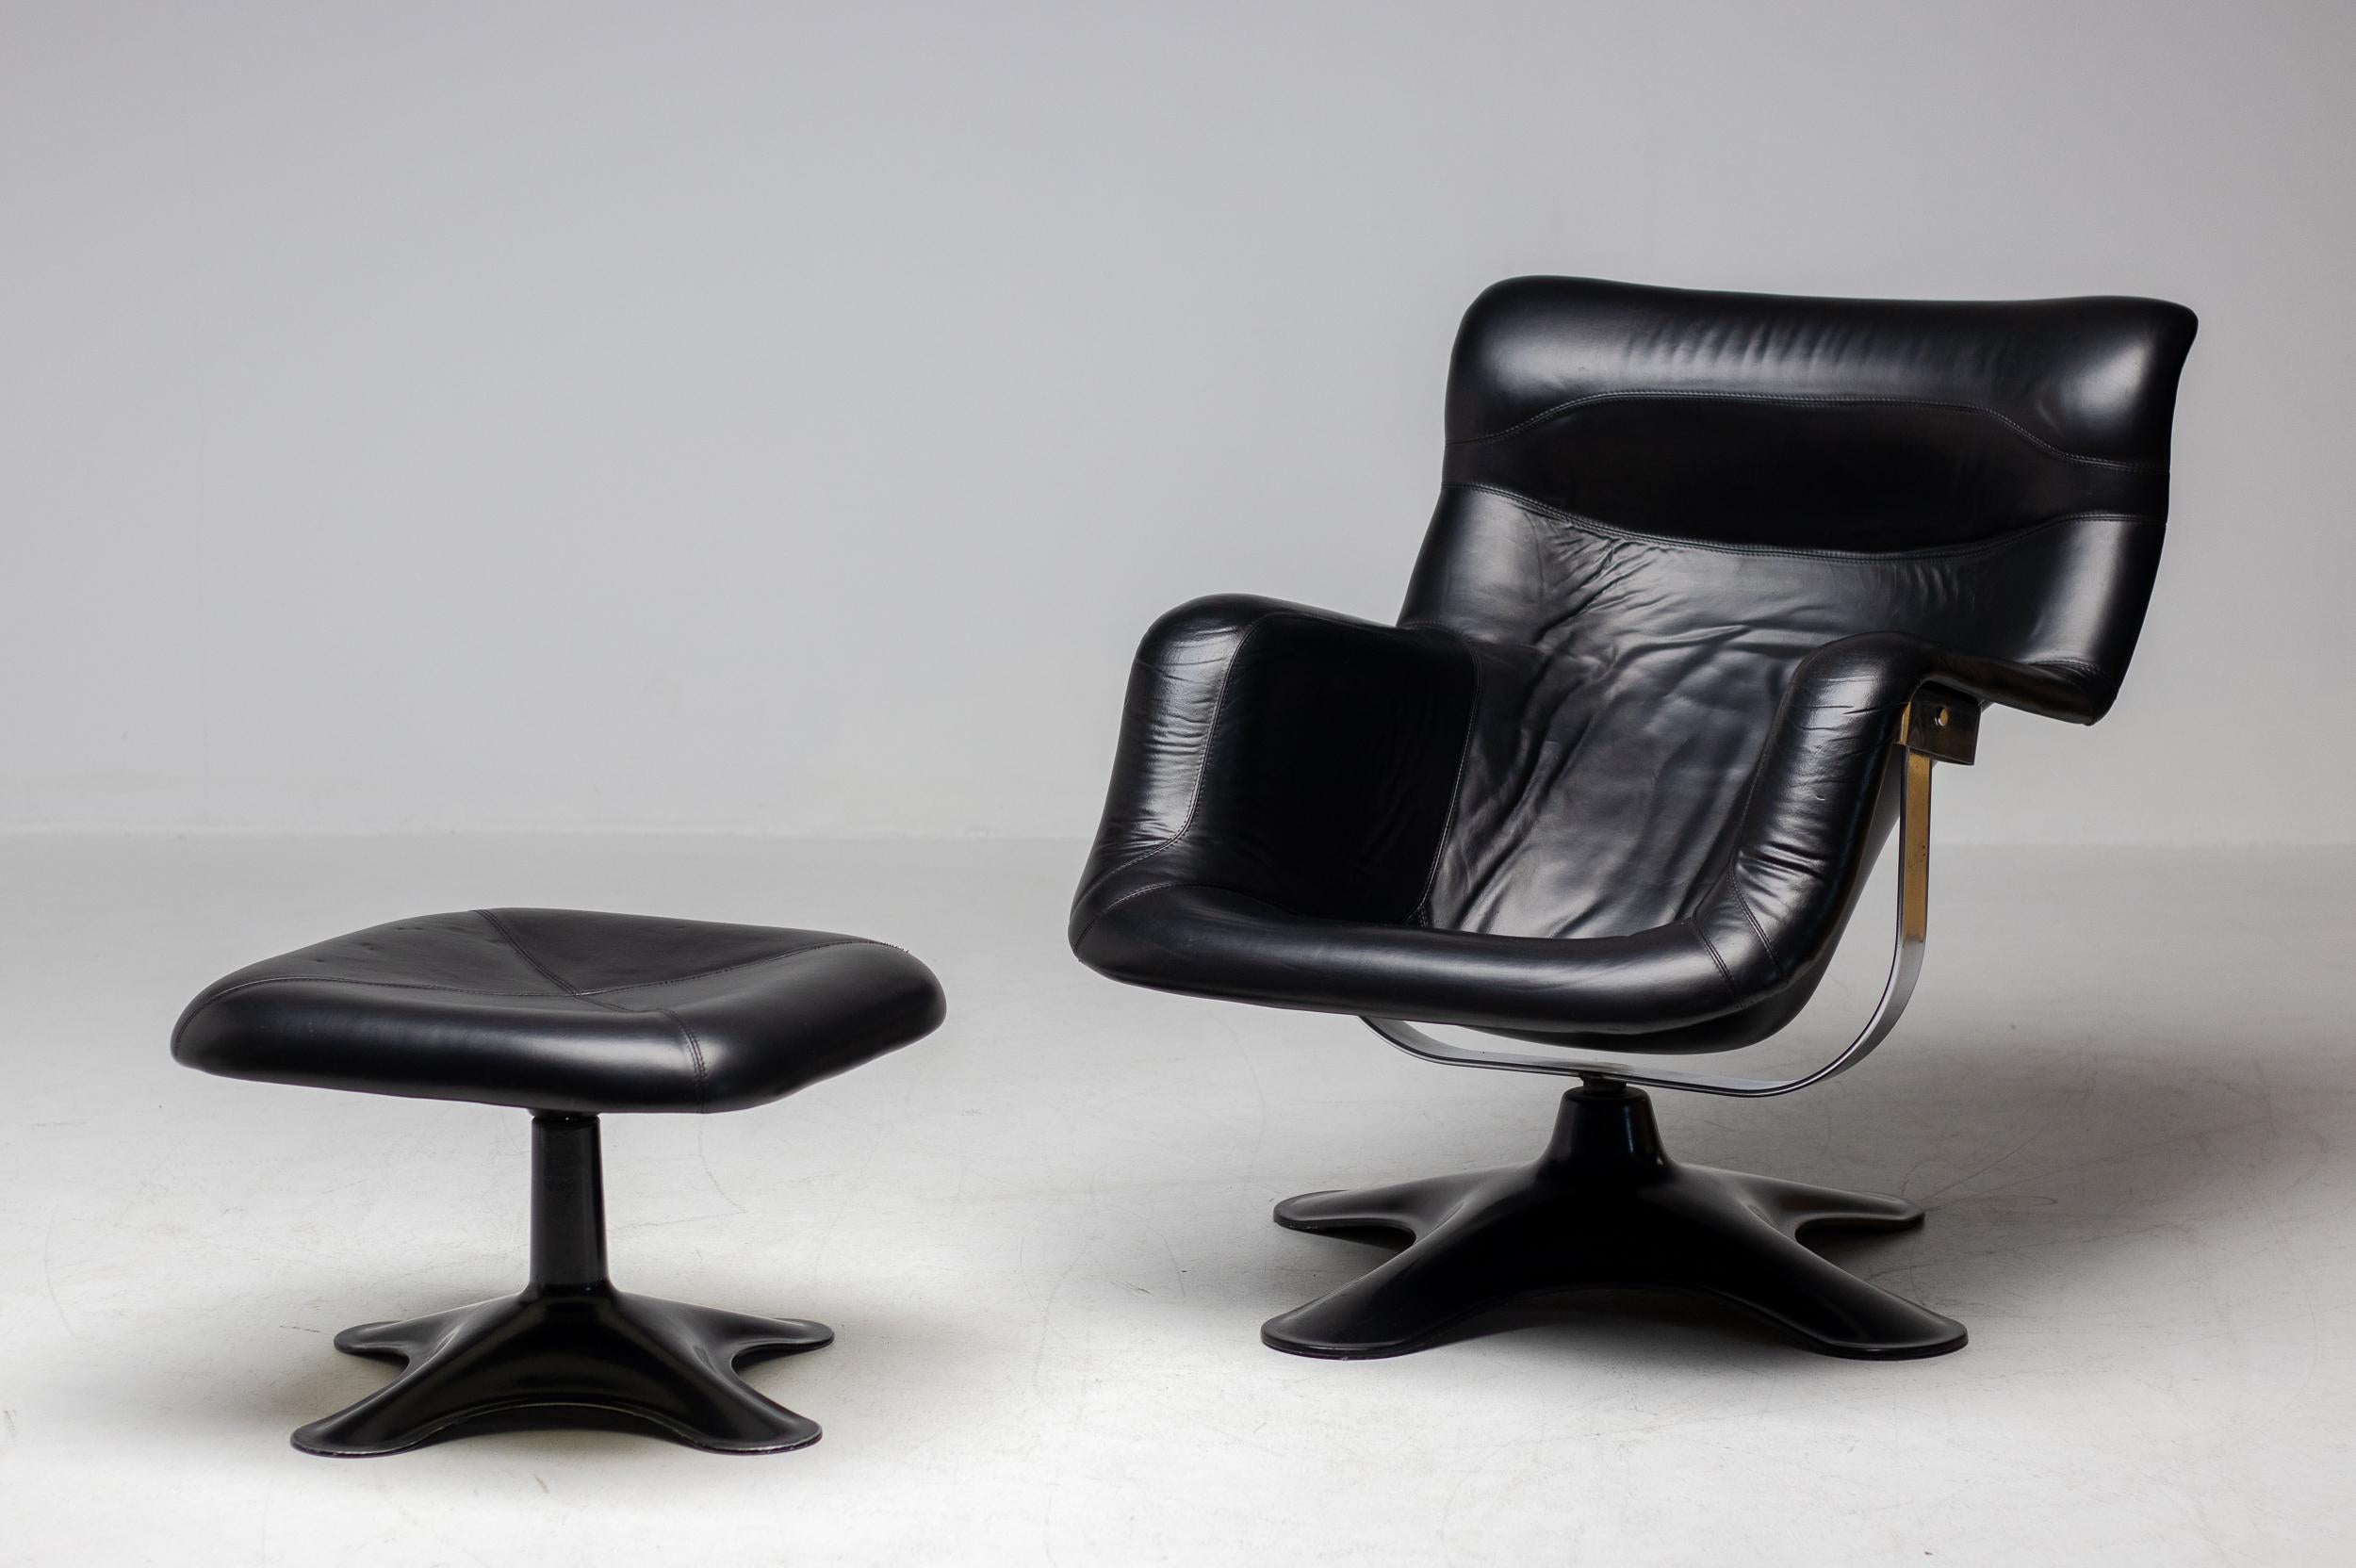 Wunderschöne Vintage-Version dieses skandinavischen Klassikers aus den 1960er Jahren mit seltenem, passendem Drehhocker.
Der wohl bequemste, futuristischste und eleganteste Stuhl, der in den 1960er Jahren geschaffen wurde.
Dieses Set ist in einem